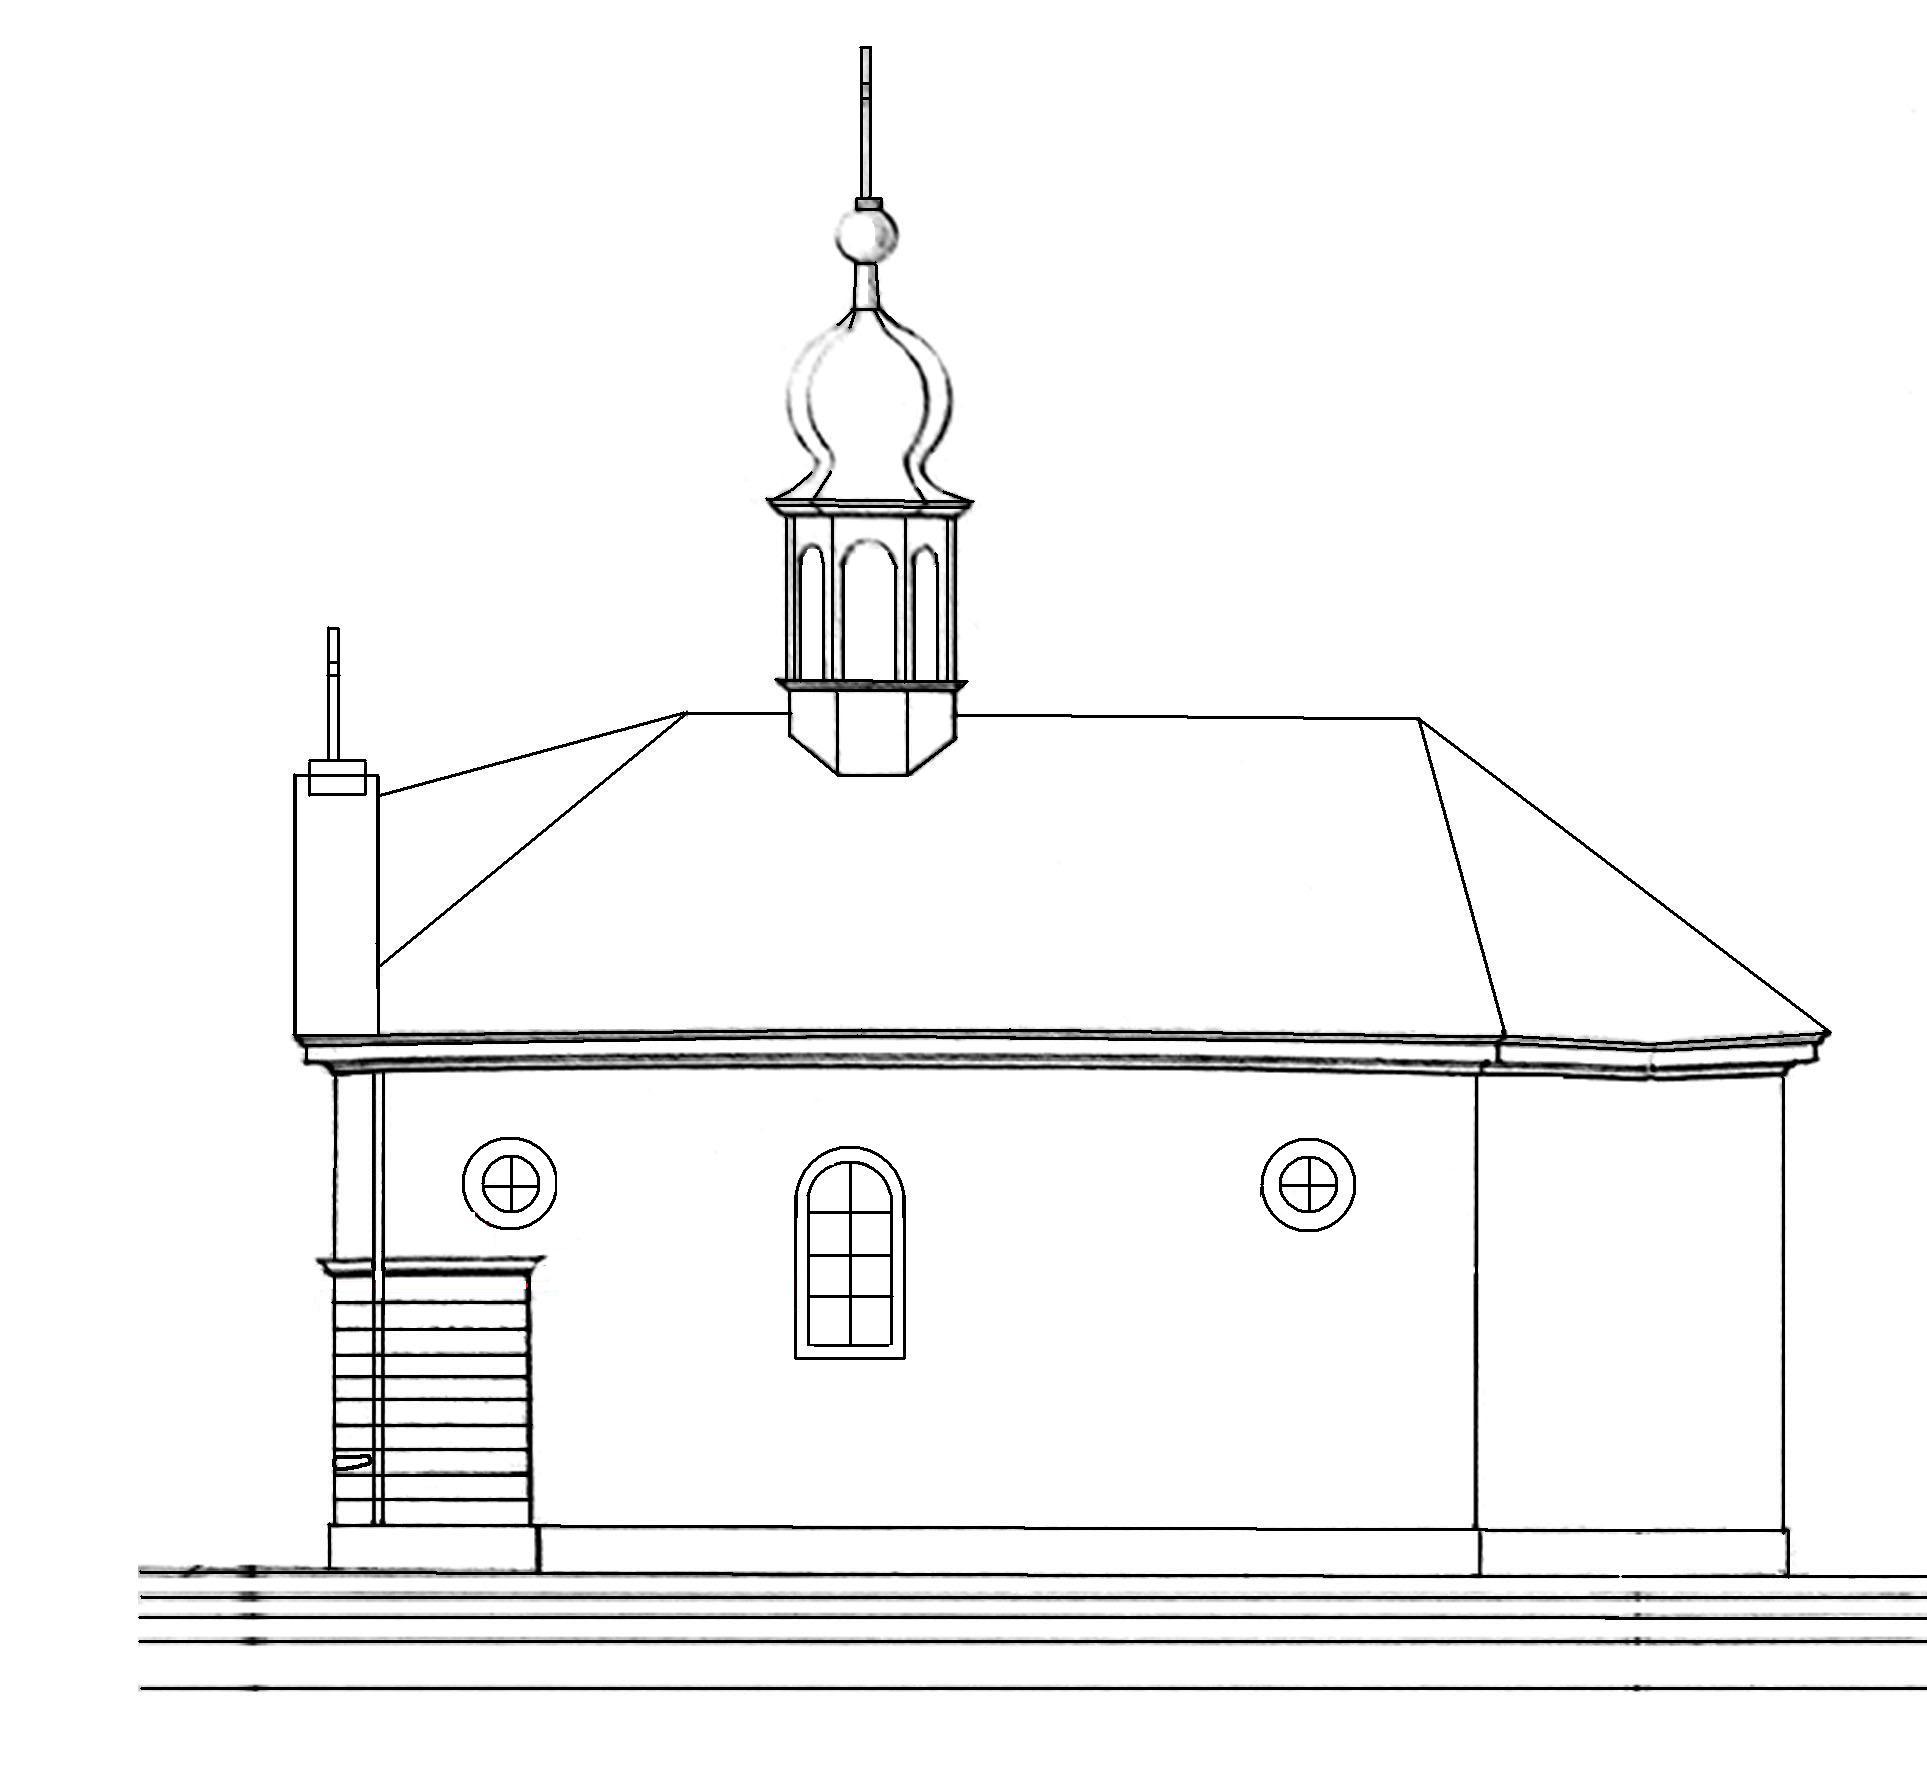 Kaple sv. Ondřeje - boční průčelí - uprava.jpg